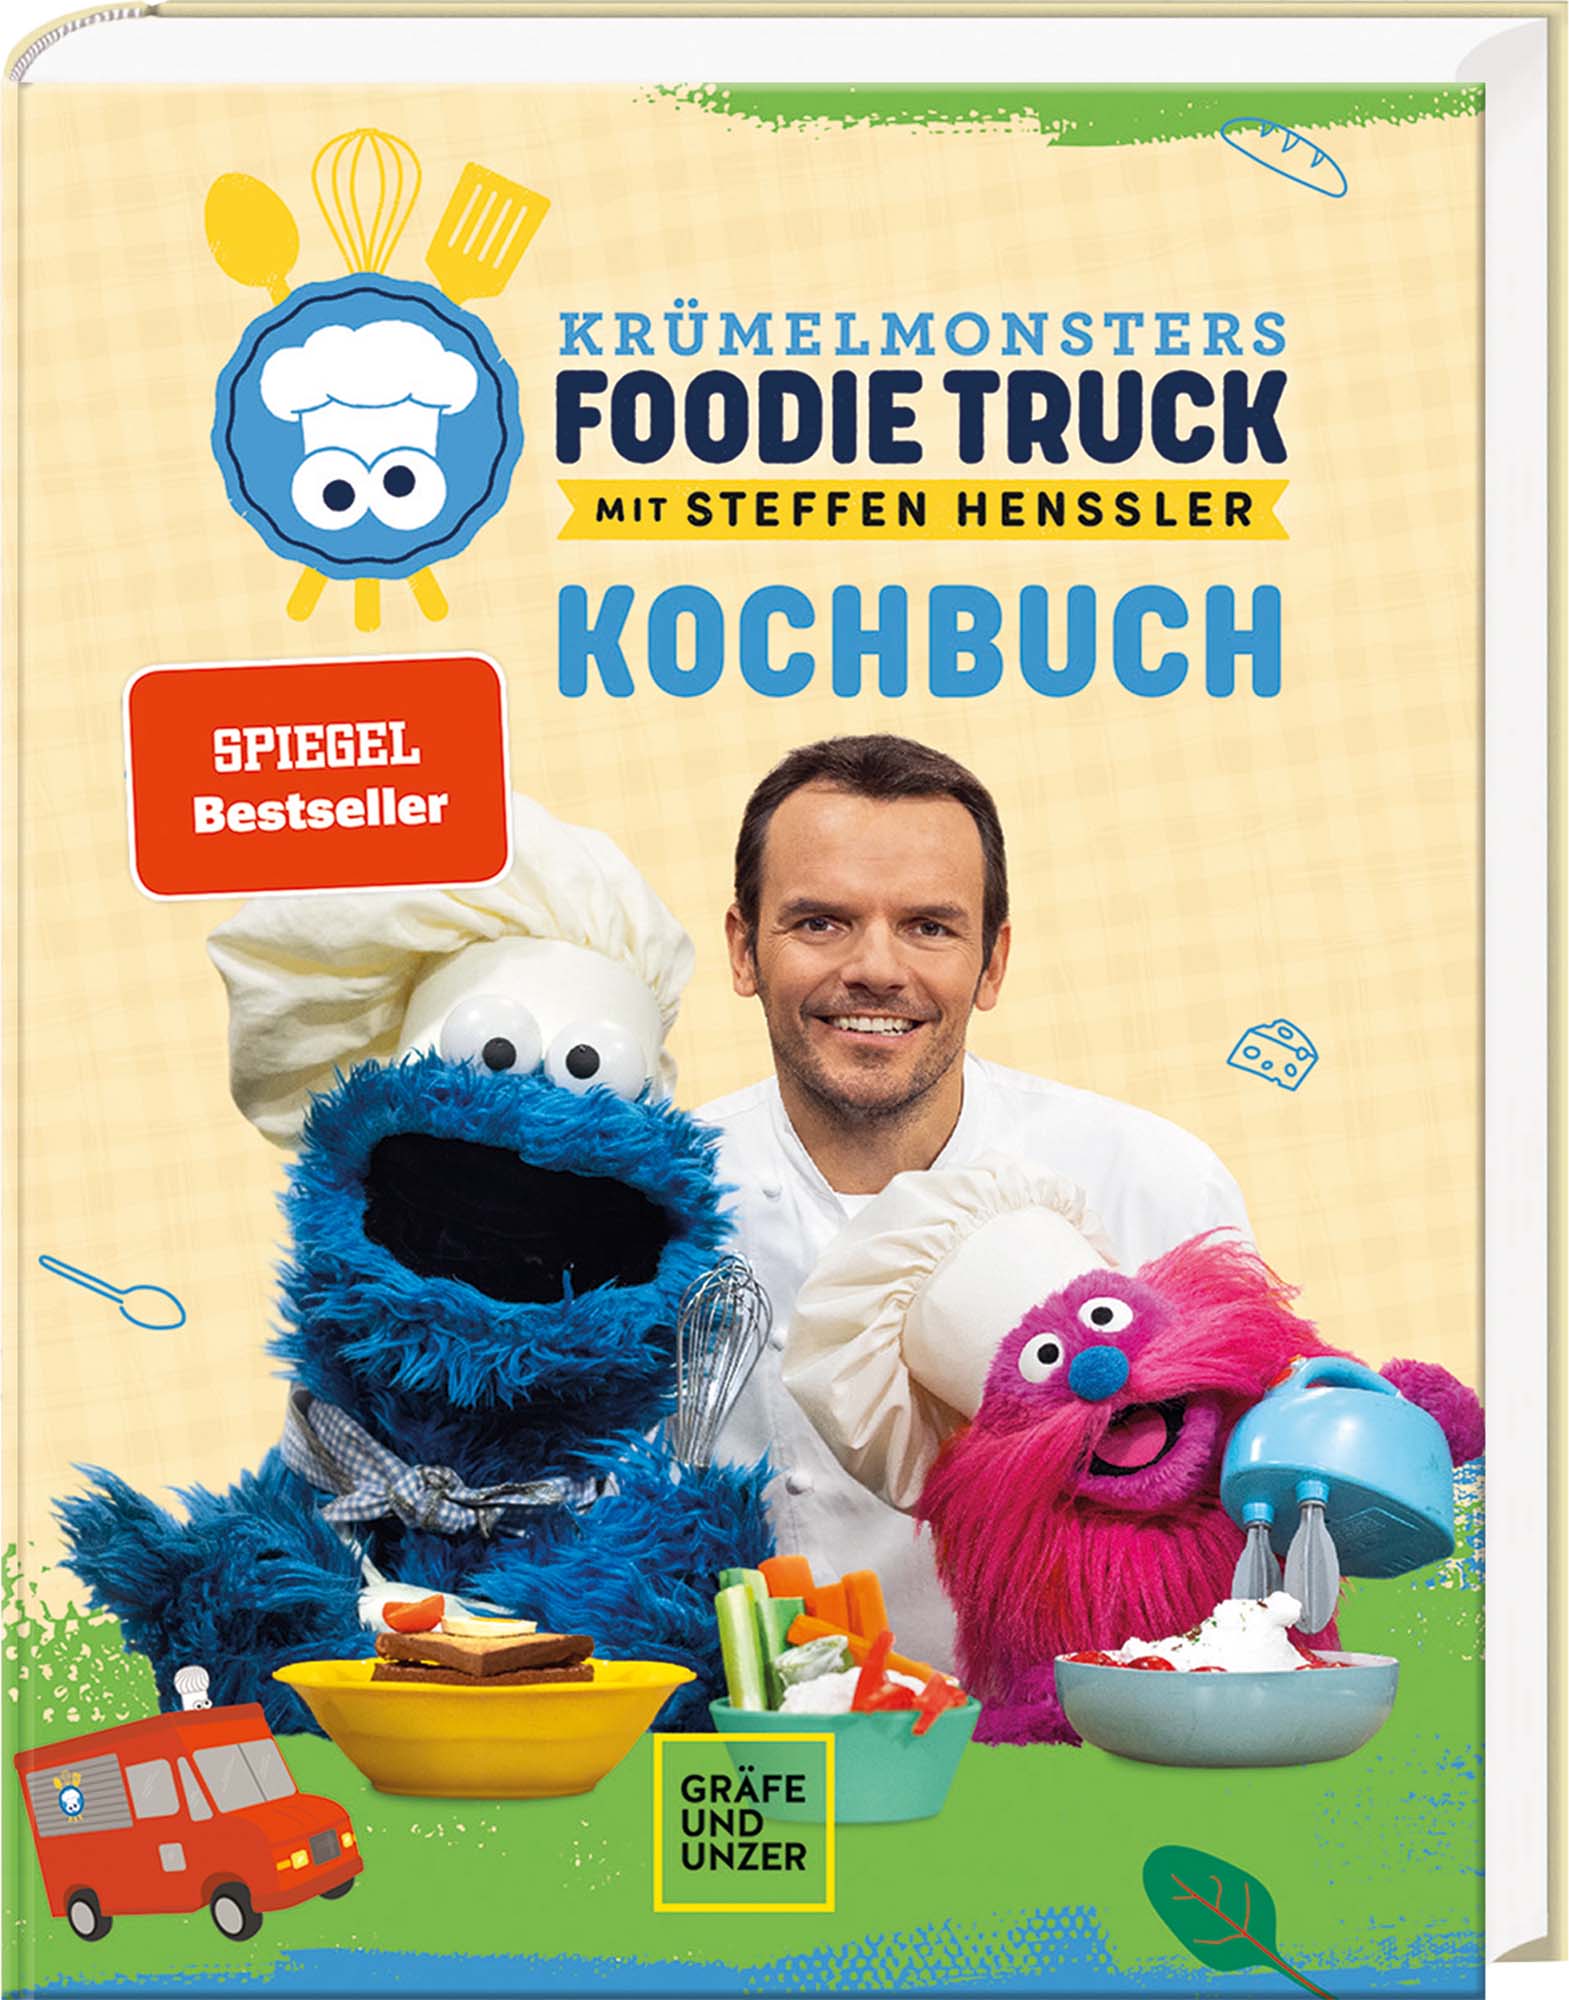 Kochbuch „Krümelmonsters Foodie Truck“ mit Steffen Henssler